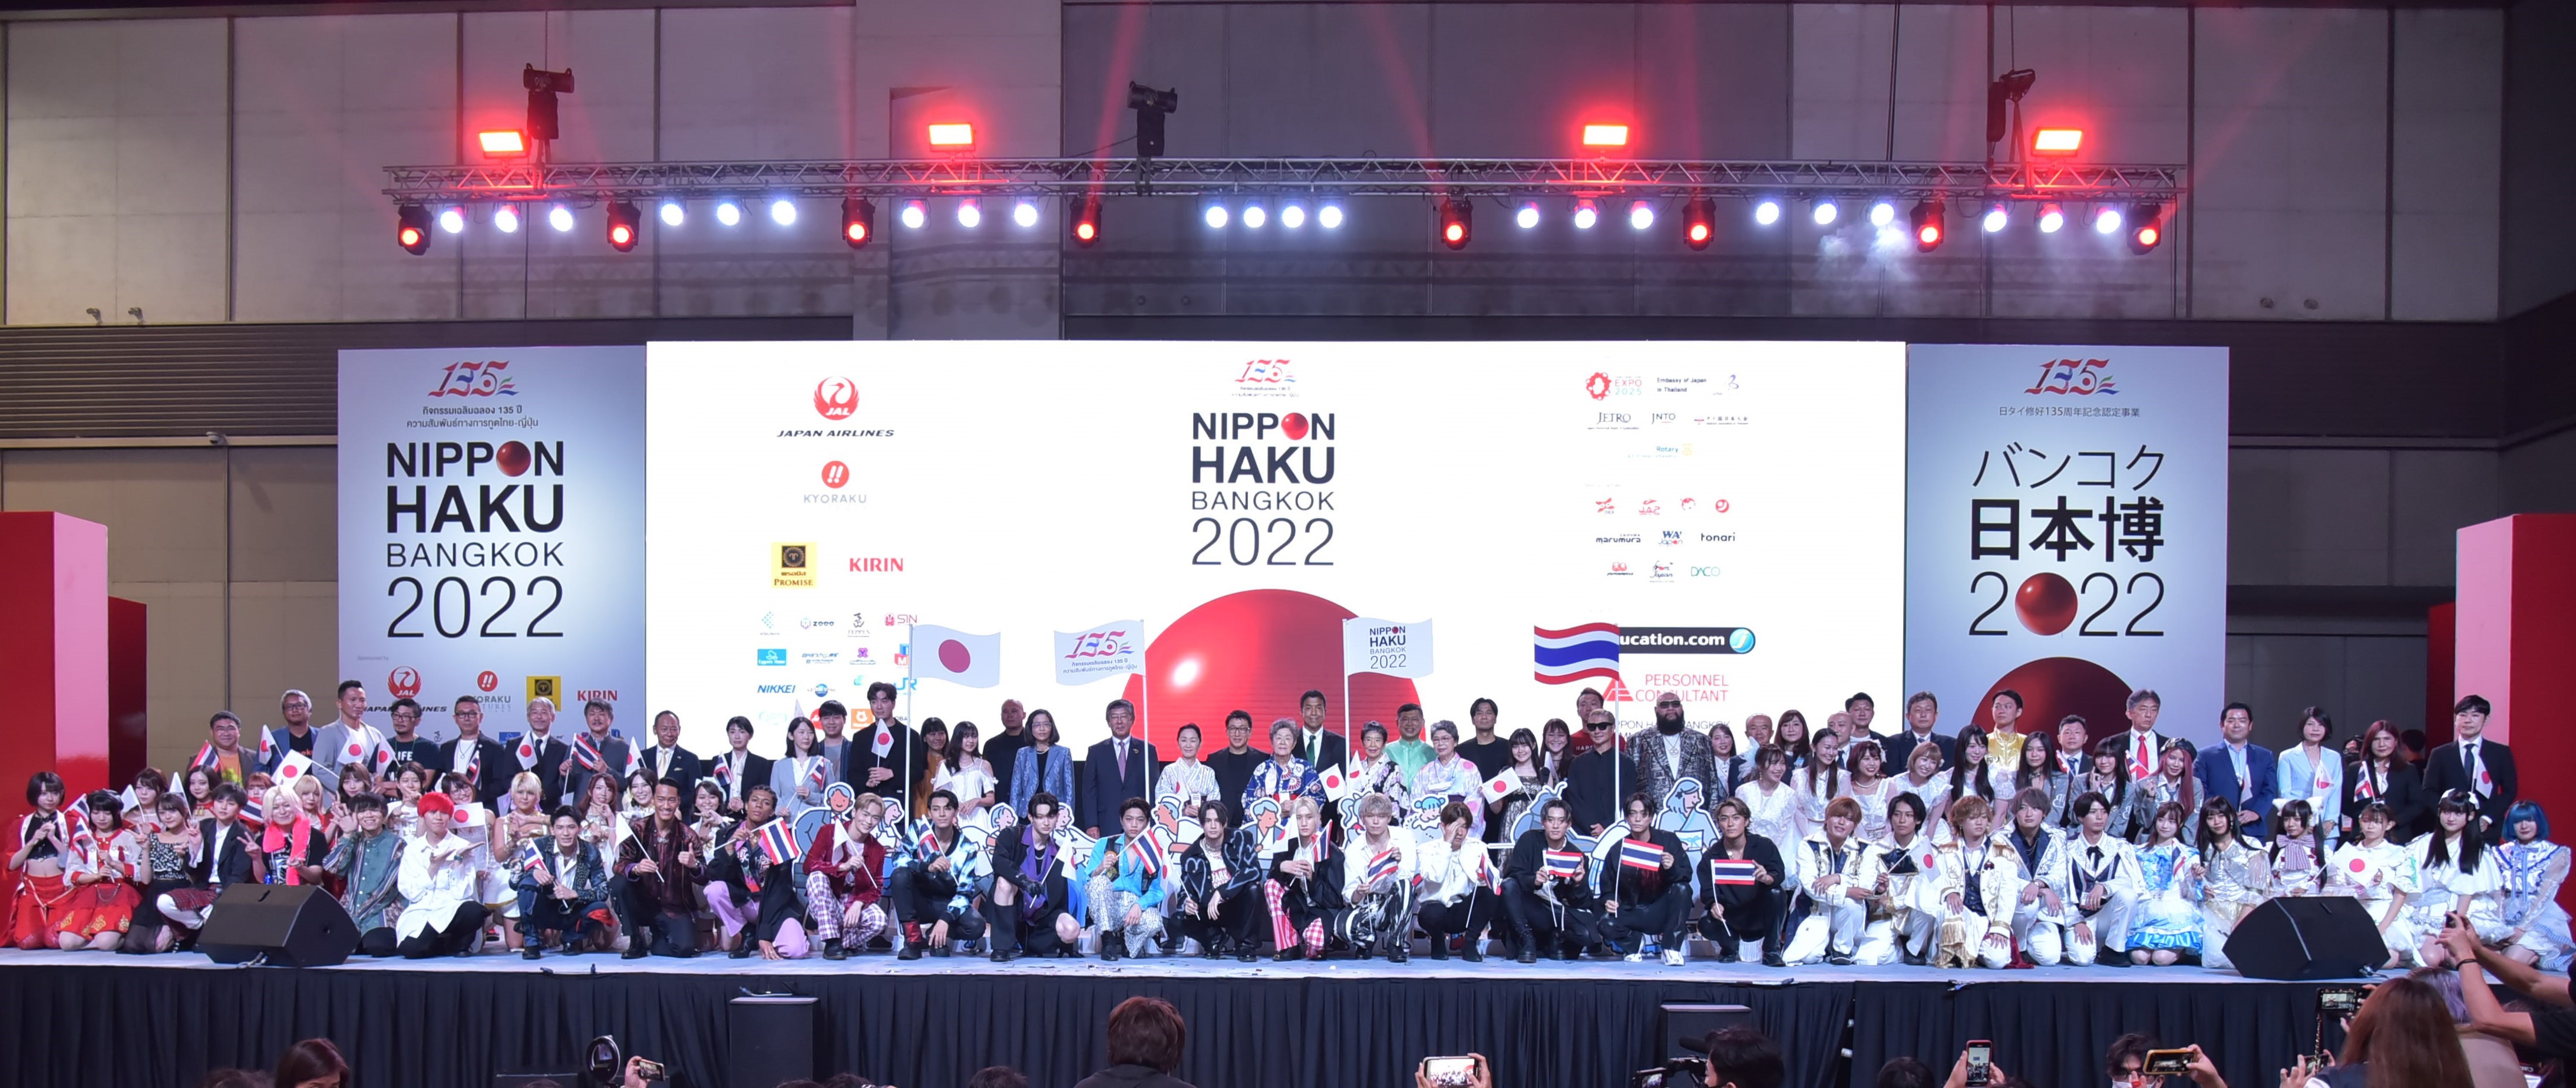 มาเนโกะ เสริมทัพ Jeducation นำแพลตฟอร์มโซเชียลคอมเมิร์ซลุยตลาดญี่ปุ่น  ก้าวสู่ Hybrid Fair ในงาน Nippon Haku Bangkok 2022